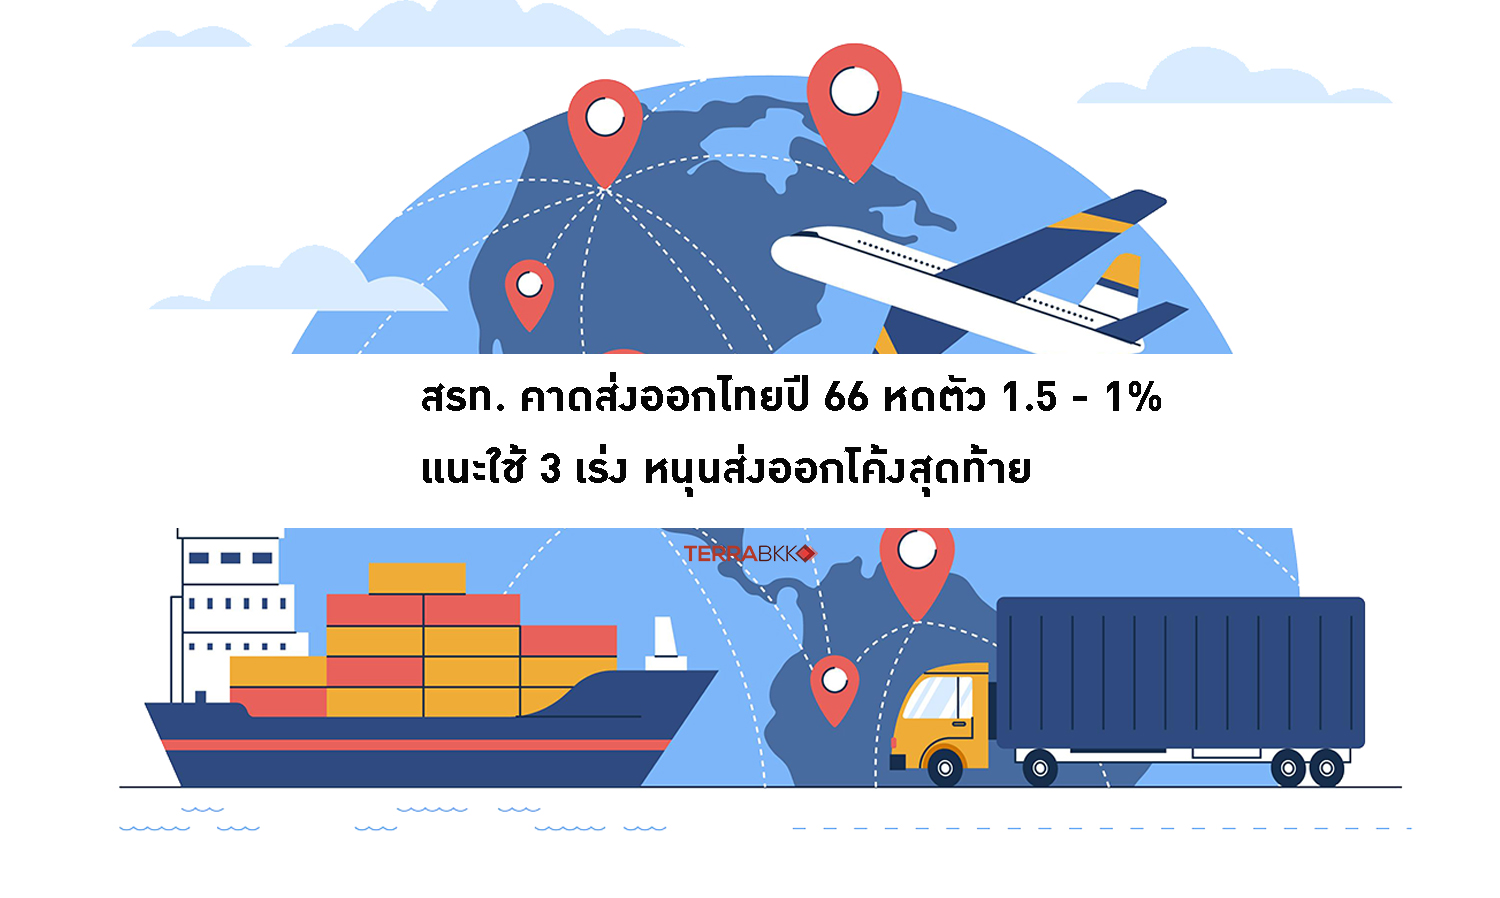 สรท. คาดส่งออกไทยปี 66 หดตัว 1.5 - 1%  แนะใช้ 3 เร่ง หนุนส่งออกโค้งสุดท้าย 